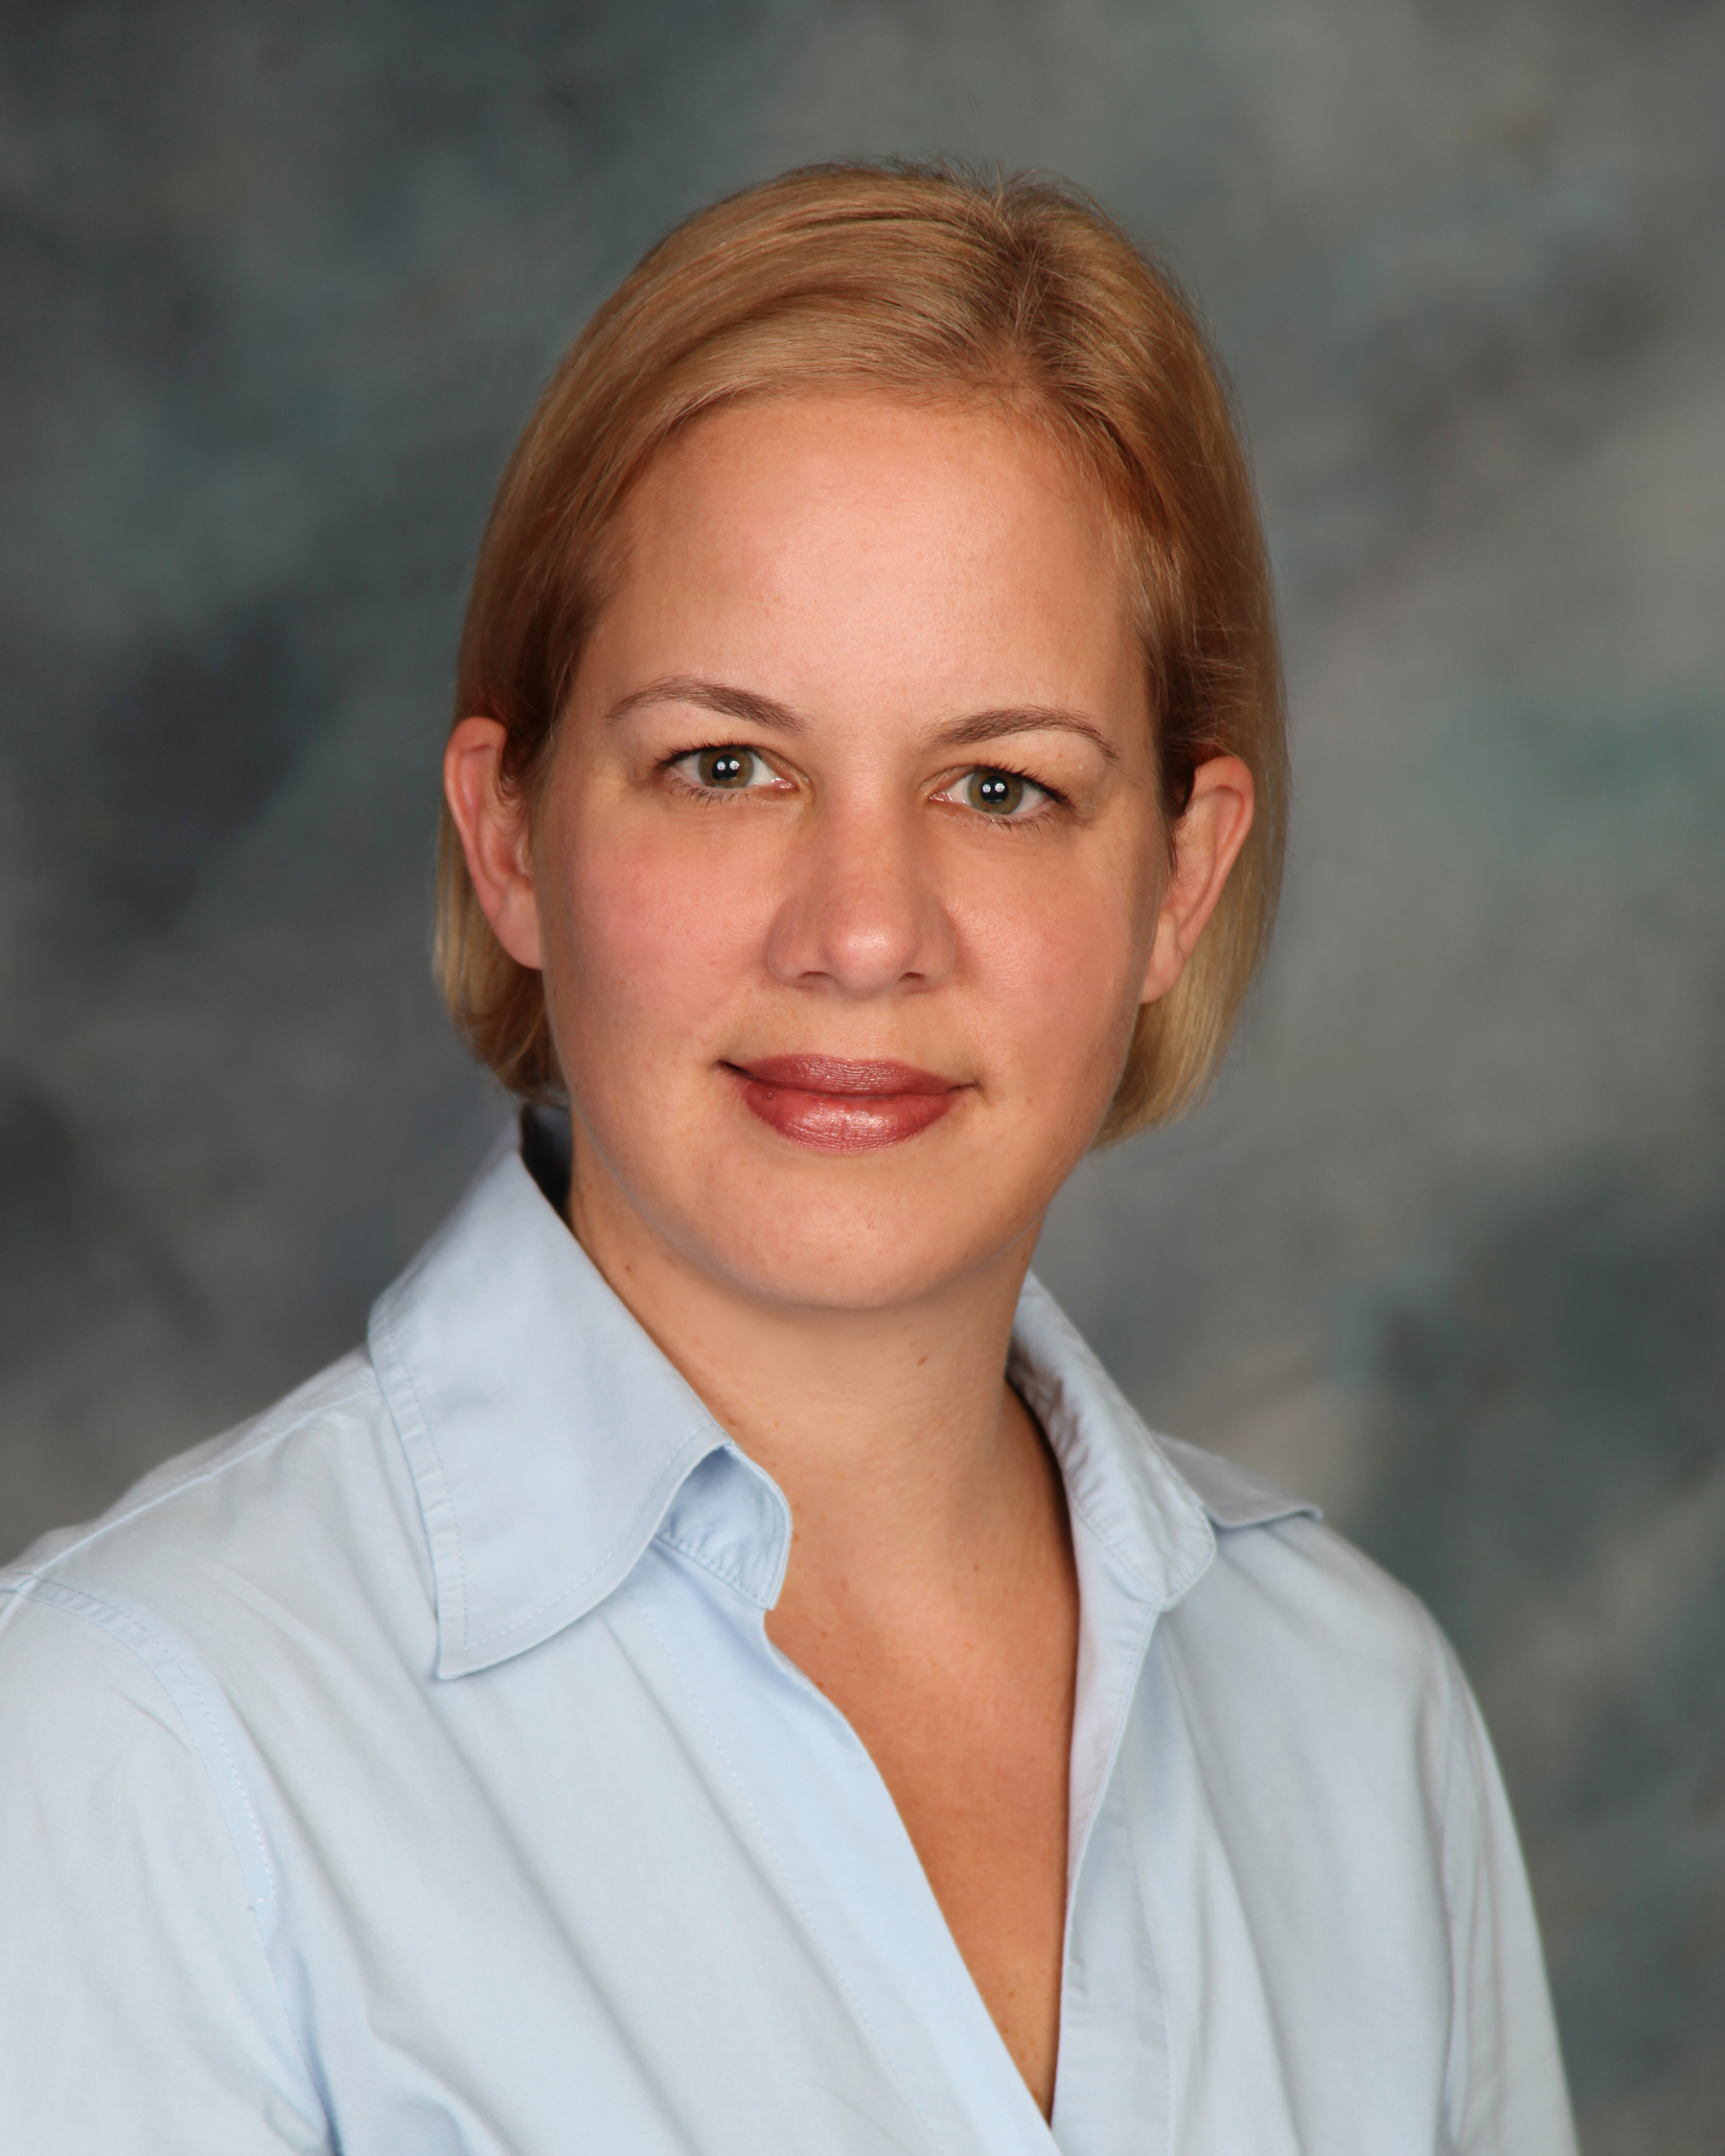 AirSept Names Marion Parkes as Procurement Manager | THE SHOP